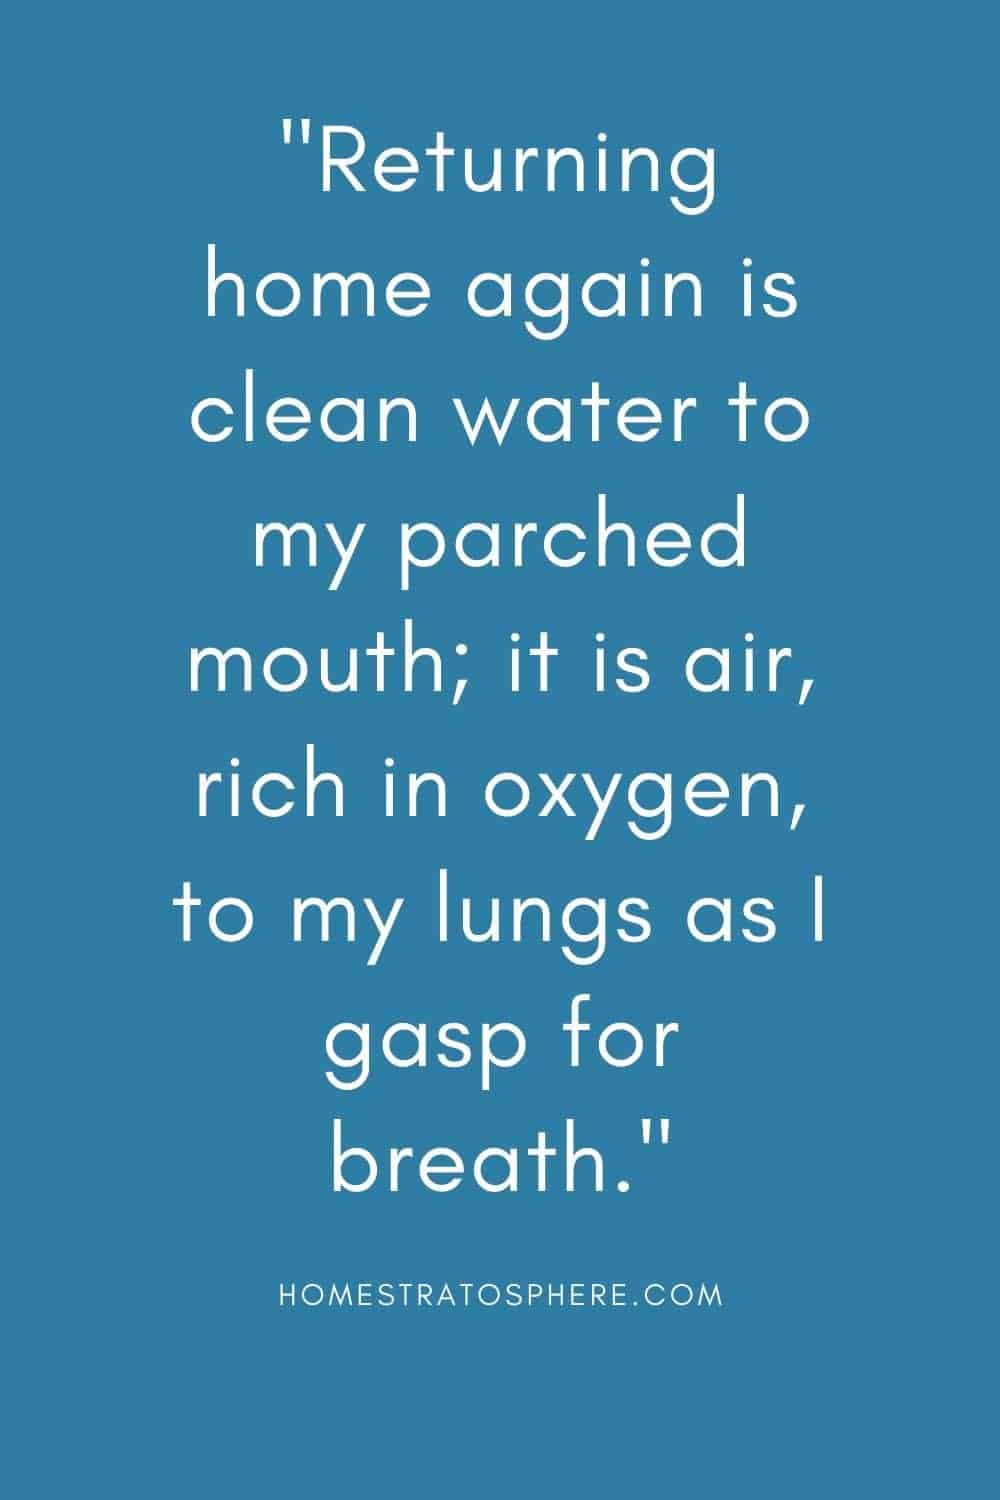 “回家对我干渴的嘴来说是干净的水;当我喘不过气来的时候，它是充满氧气的空气。”